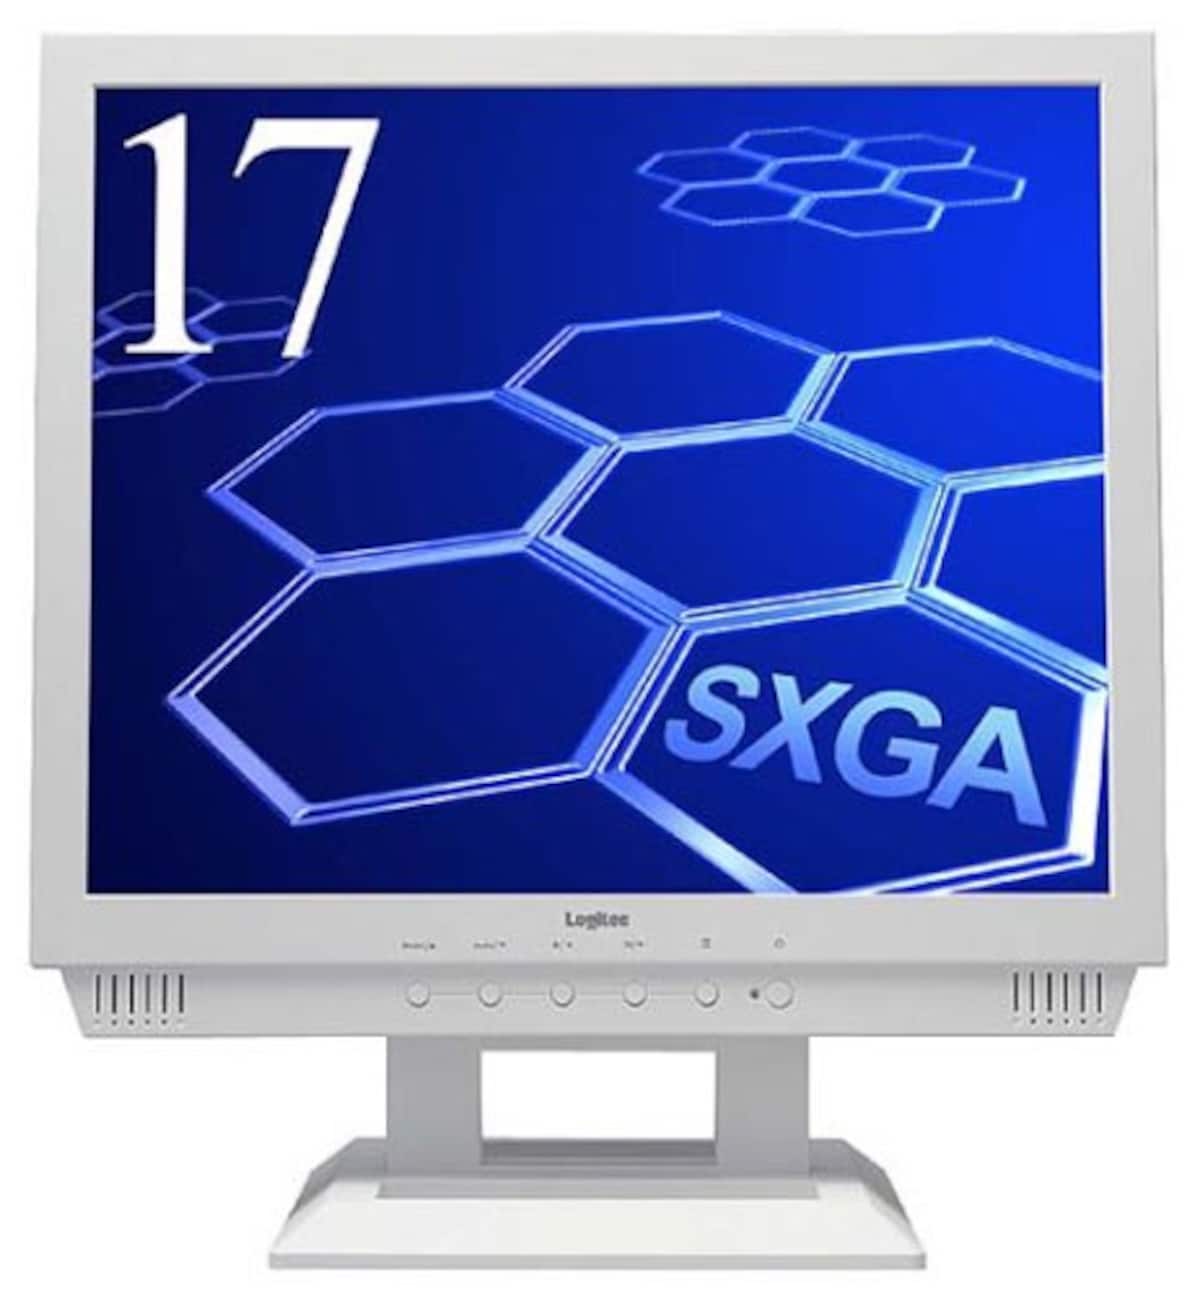 Logitec SXGA対応17型アナログ液晶モニタ LCM-T176A/S